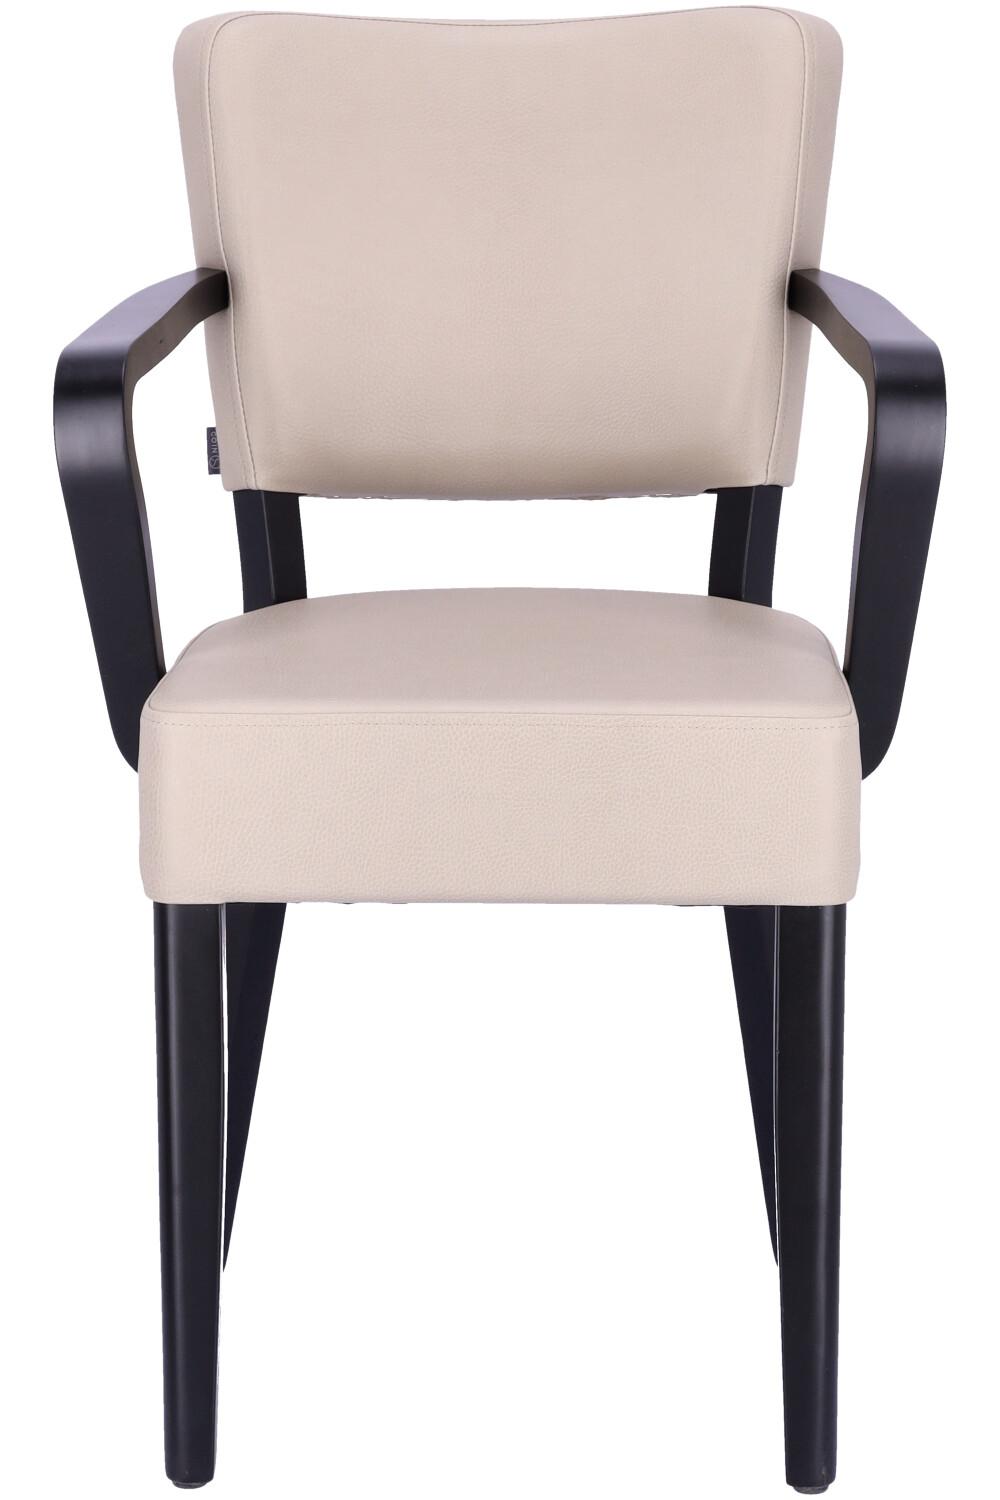 Abbildung arm chair Damara Vorderansicht